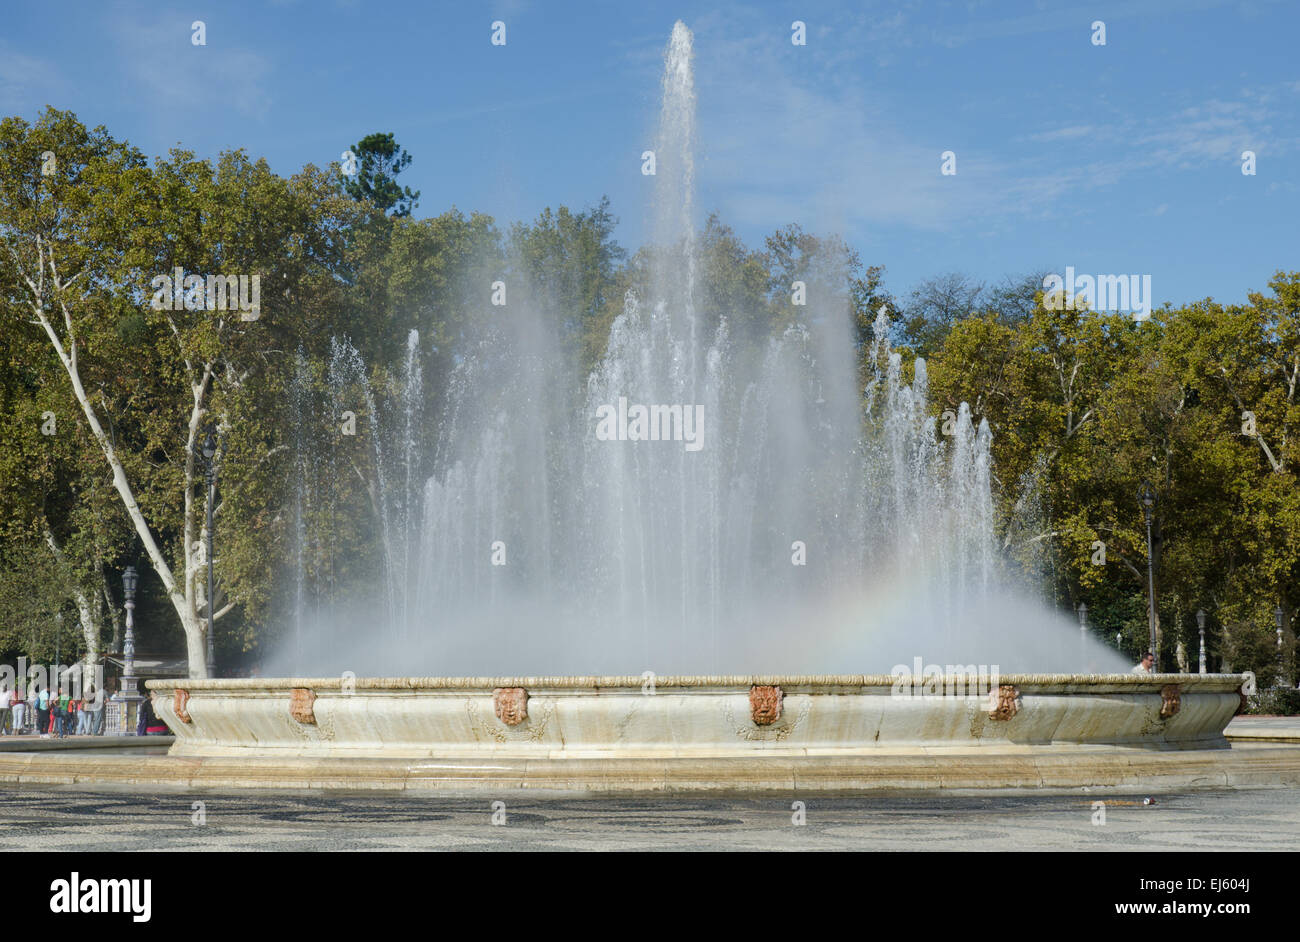 Der Brunnen auf der Plaza d'espana, Sevilla, Spanien Stockfoto